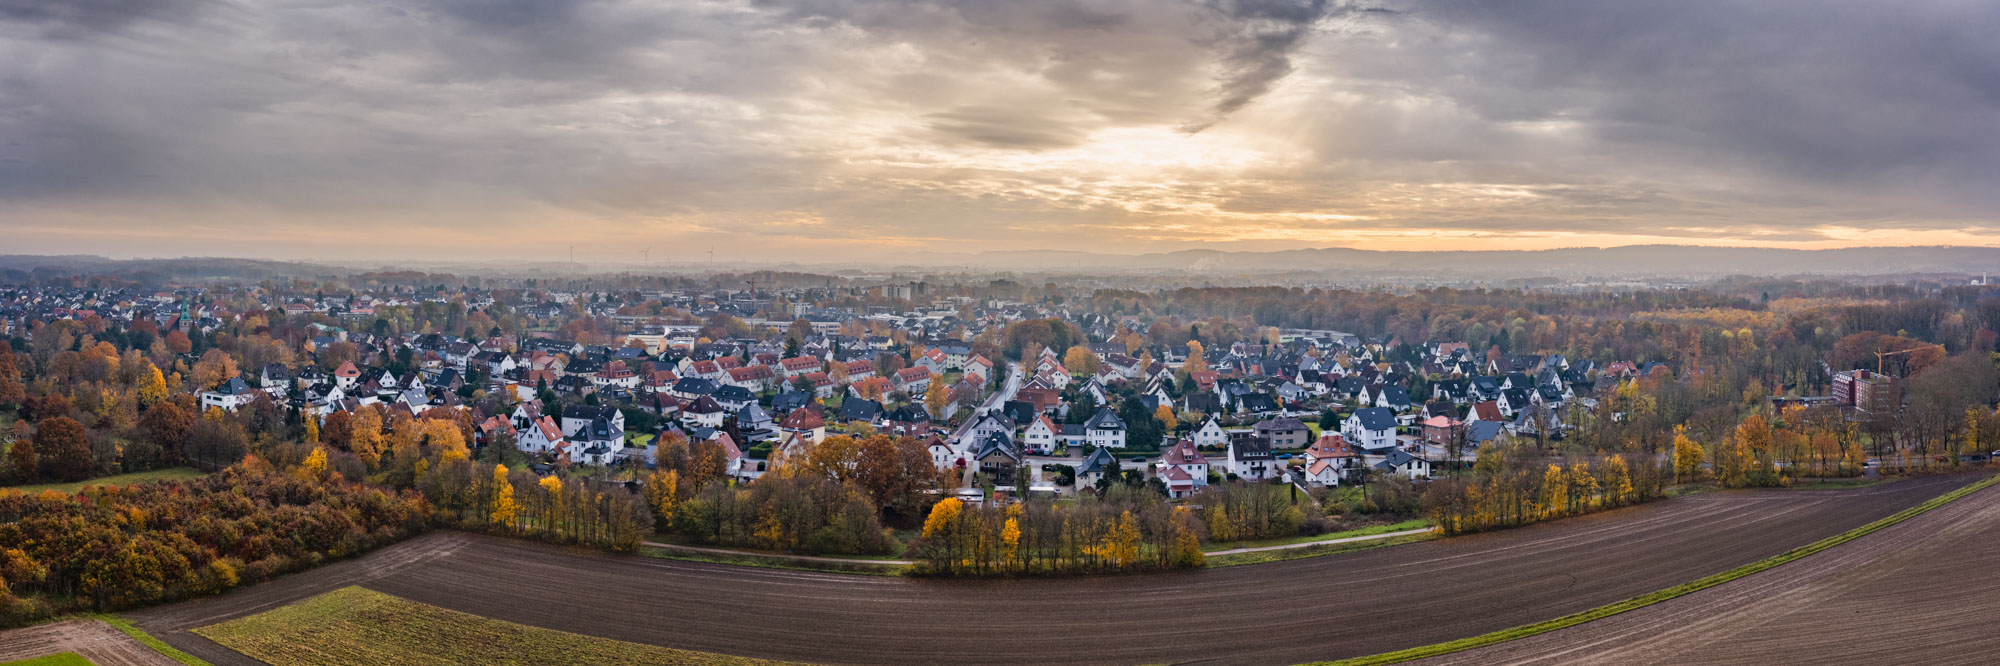 Autumn sky over Bielefeld Heben in November 2019.